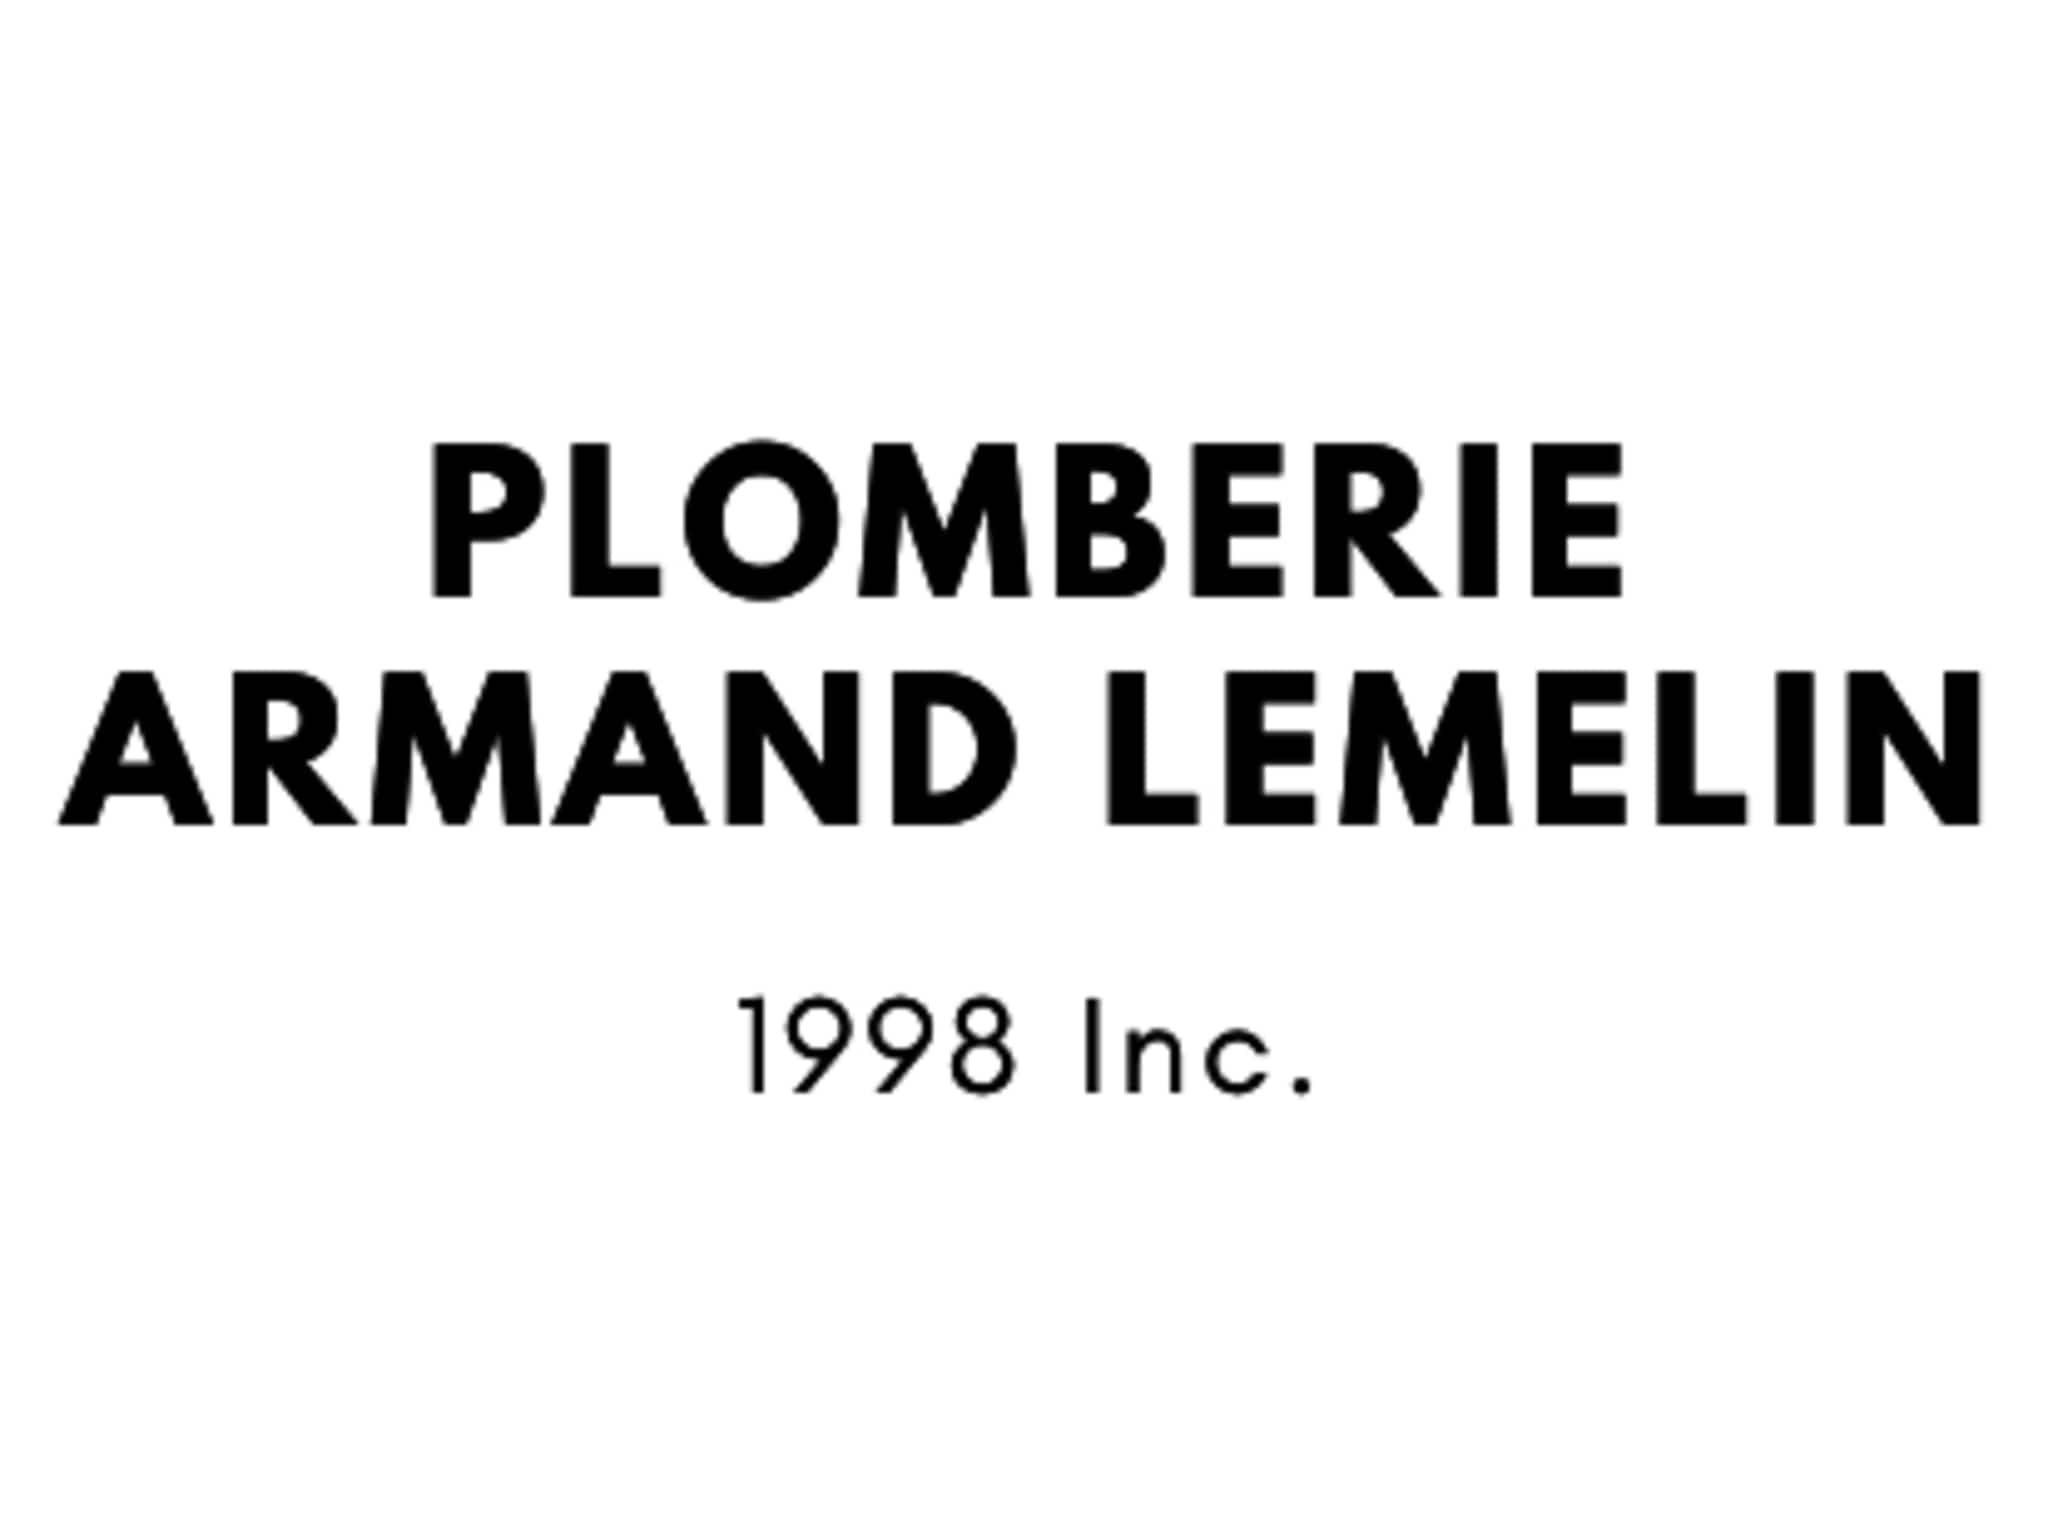 photo Plomberie Armand Lemelin (1998 Inc.)